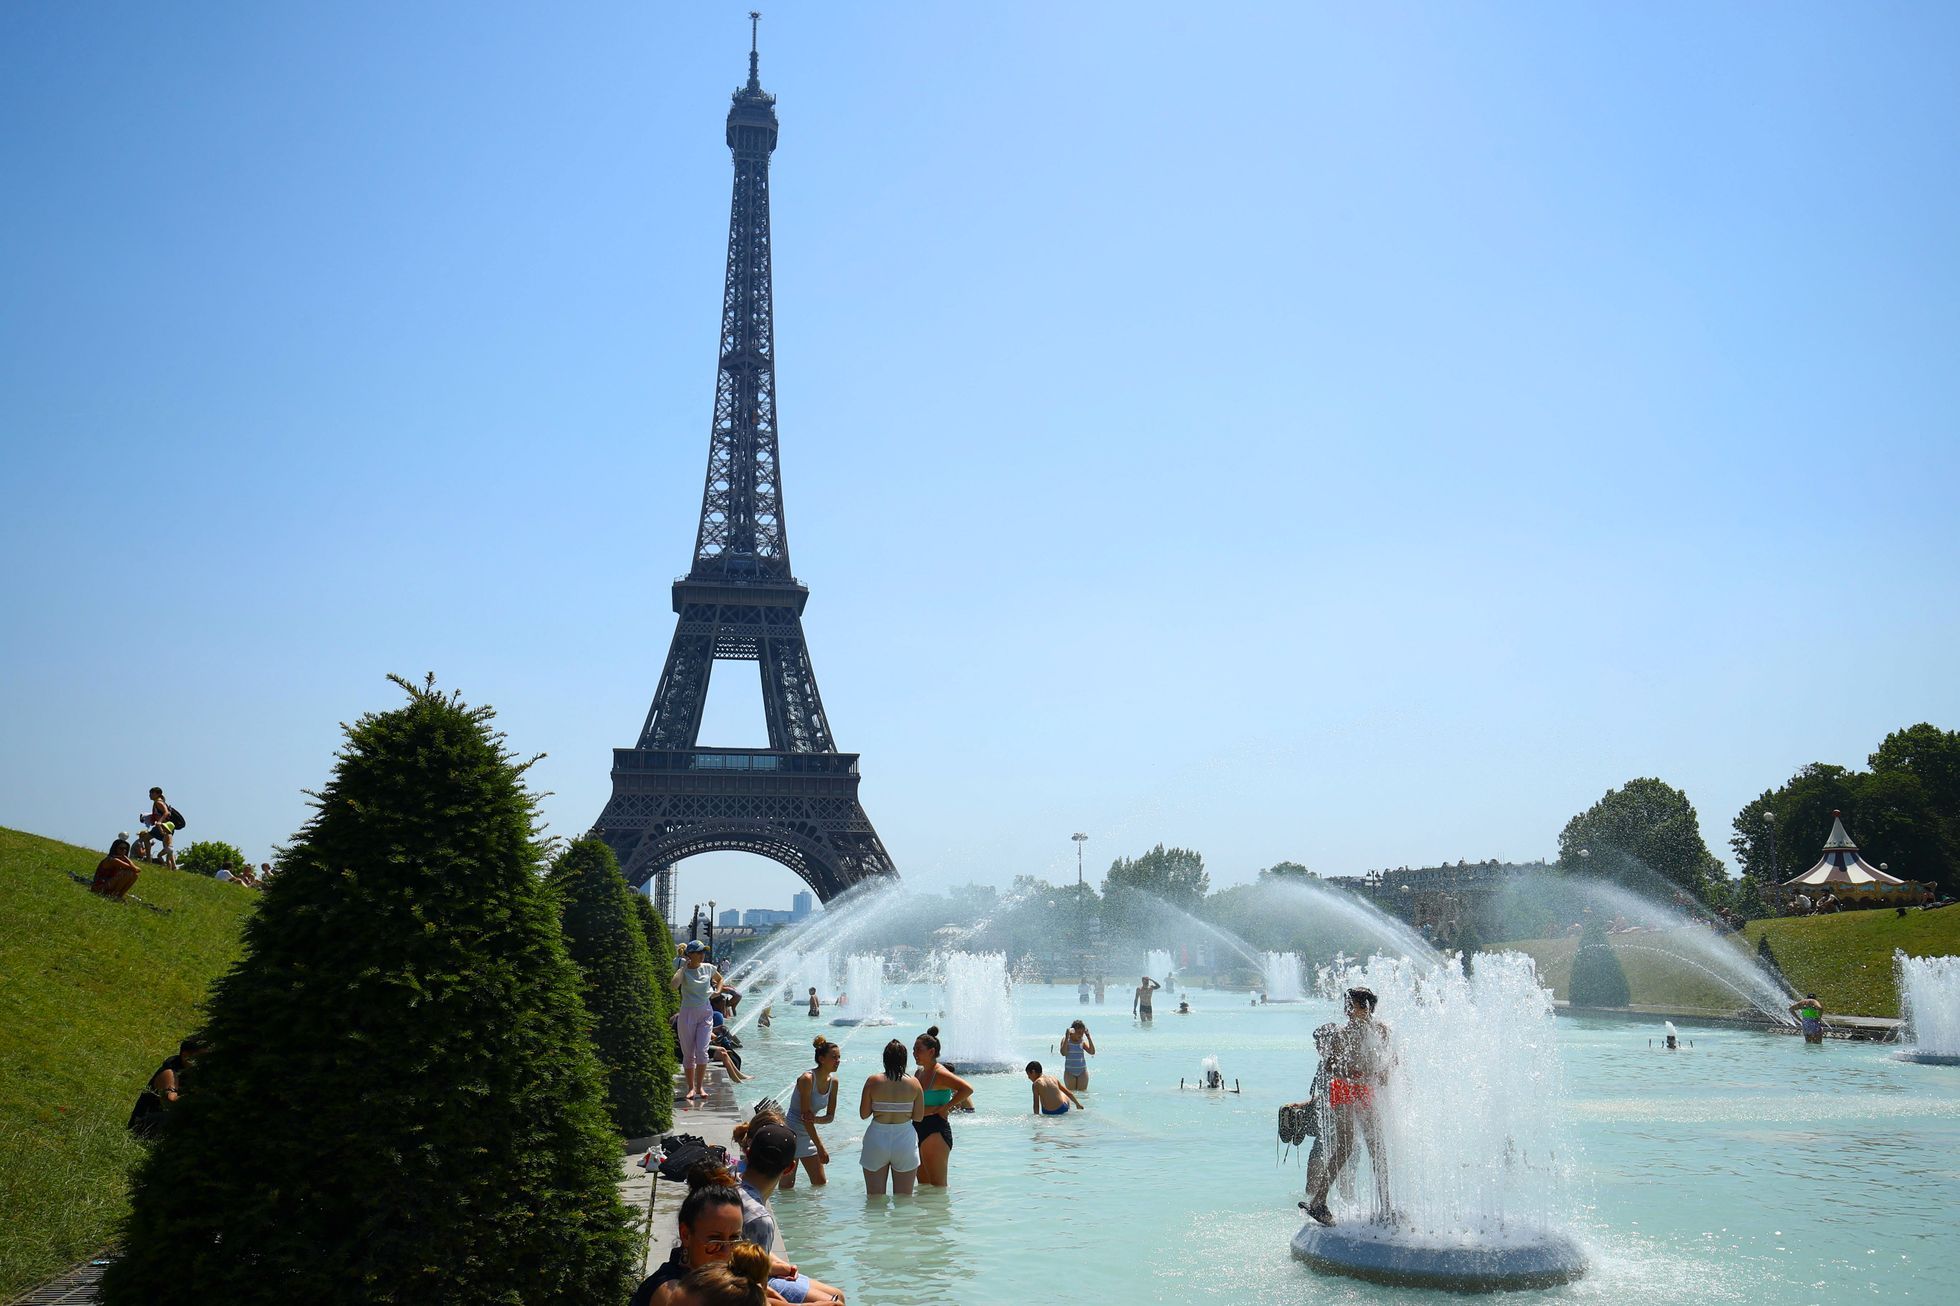 Le record absolu de température a été établi en France, ils ont mesuré 45,9 degrés Celsius